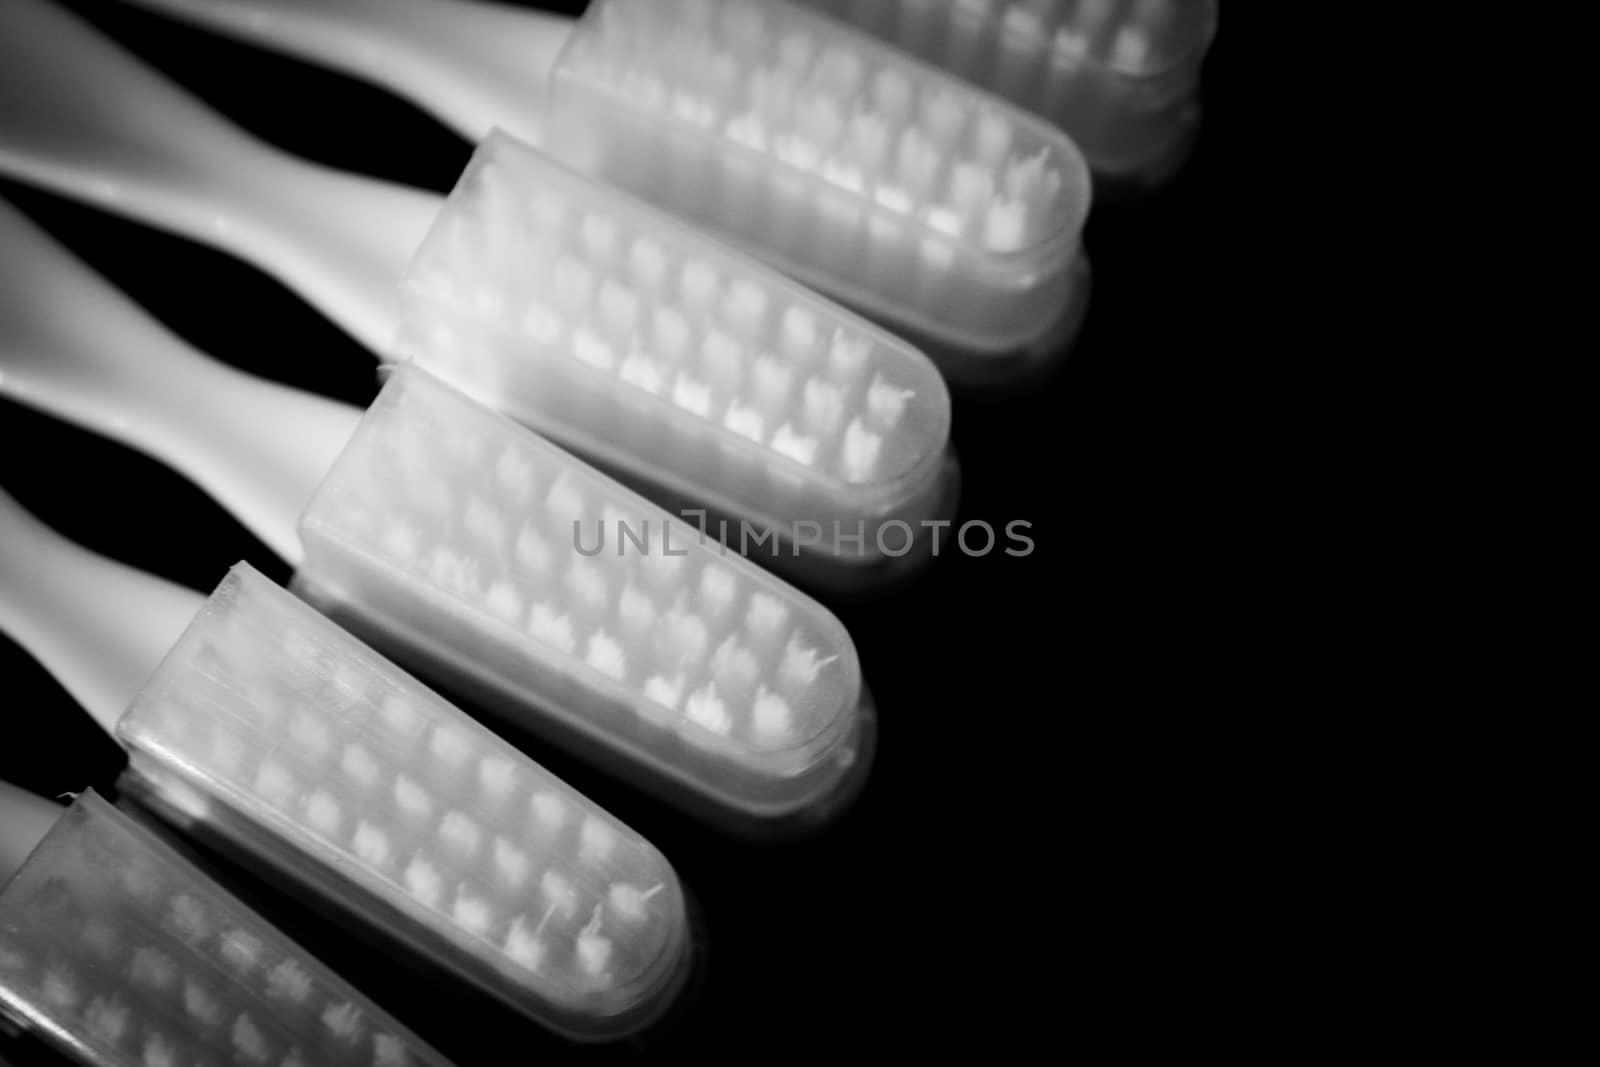 Toothbrushes teeth lying on black background. Fotografía de Gema Ibarra. Prohibida su utilización para cualquier uso sin autorización.Todos los derechos reservados.